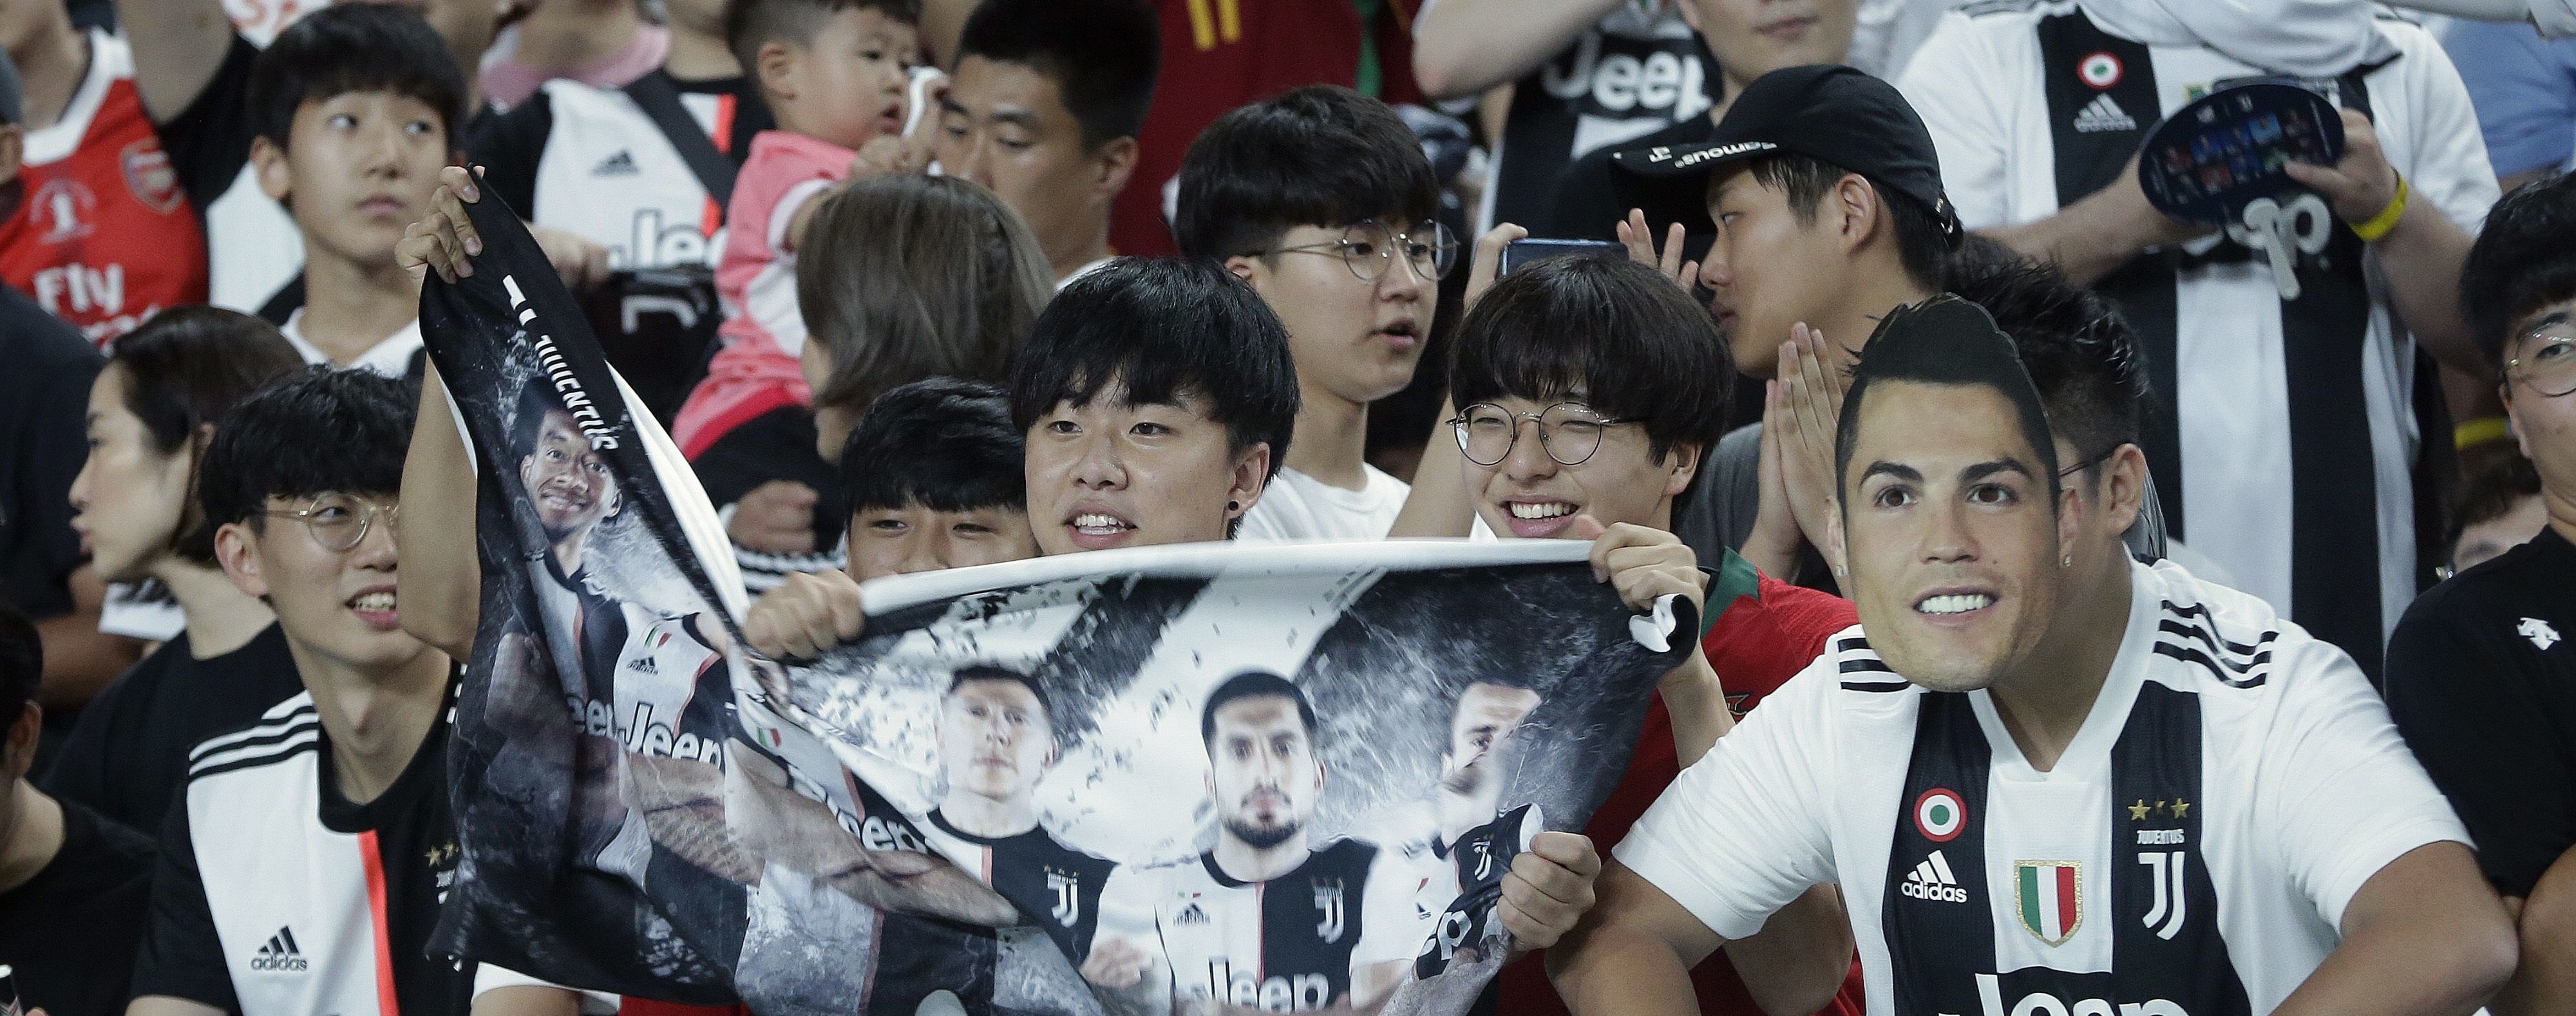 Полиция начала расследование из-за матча "Ювентуса" в Южной Корее